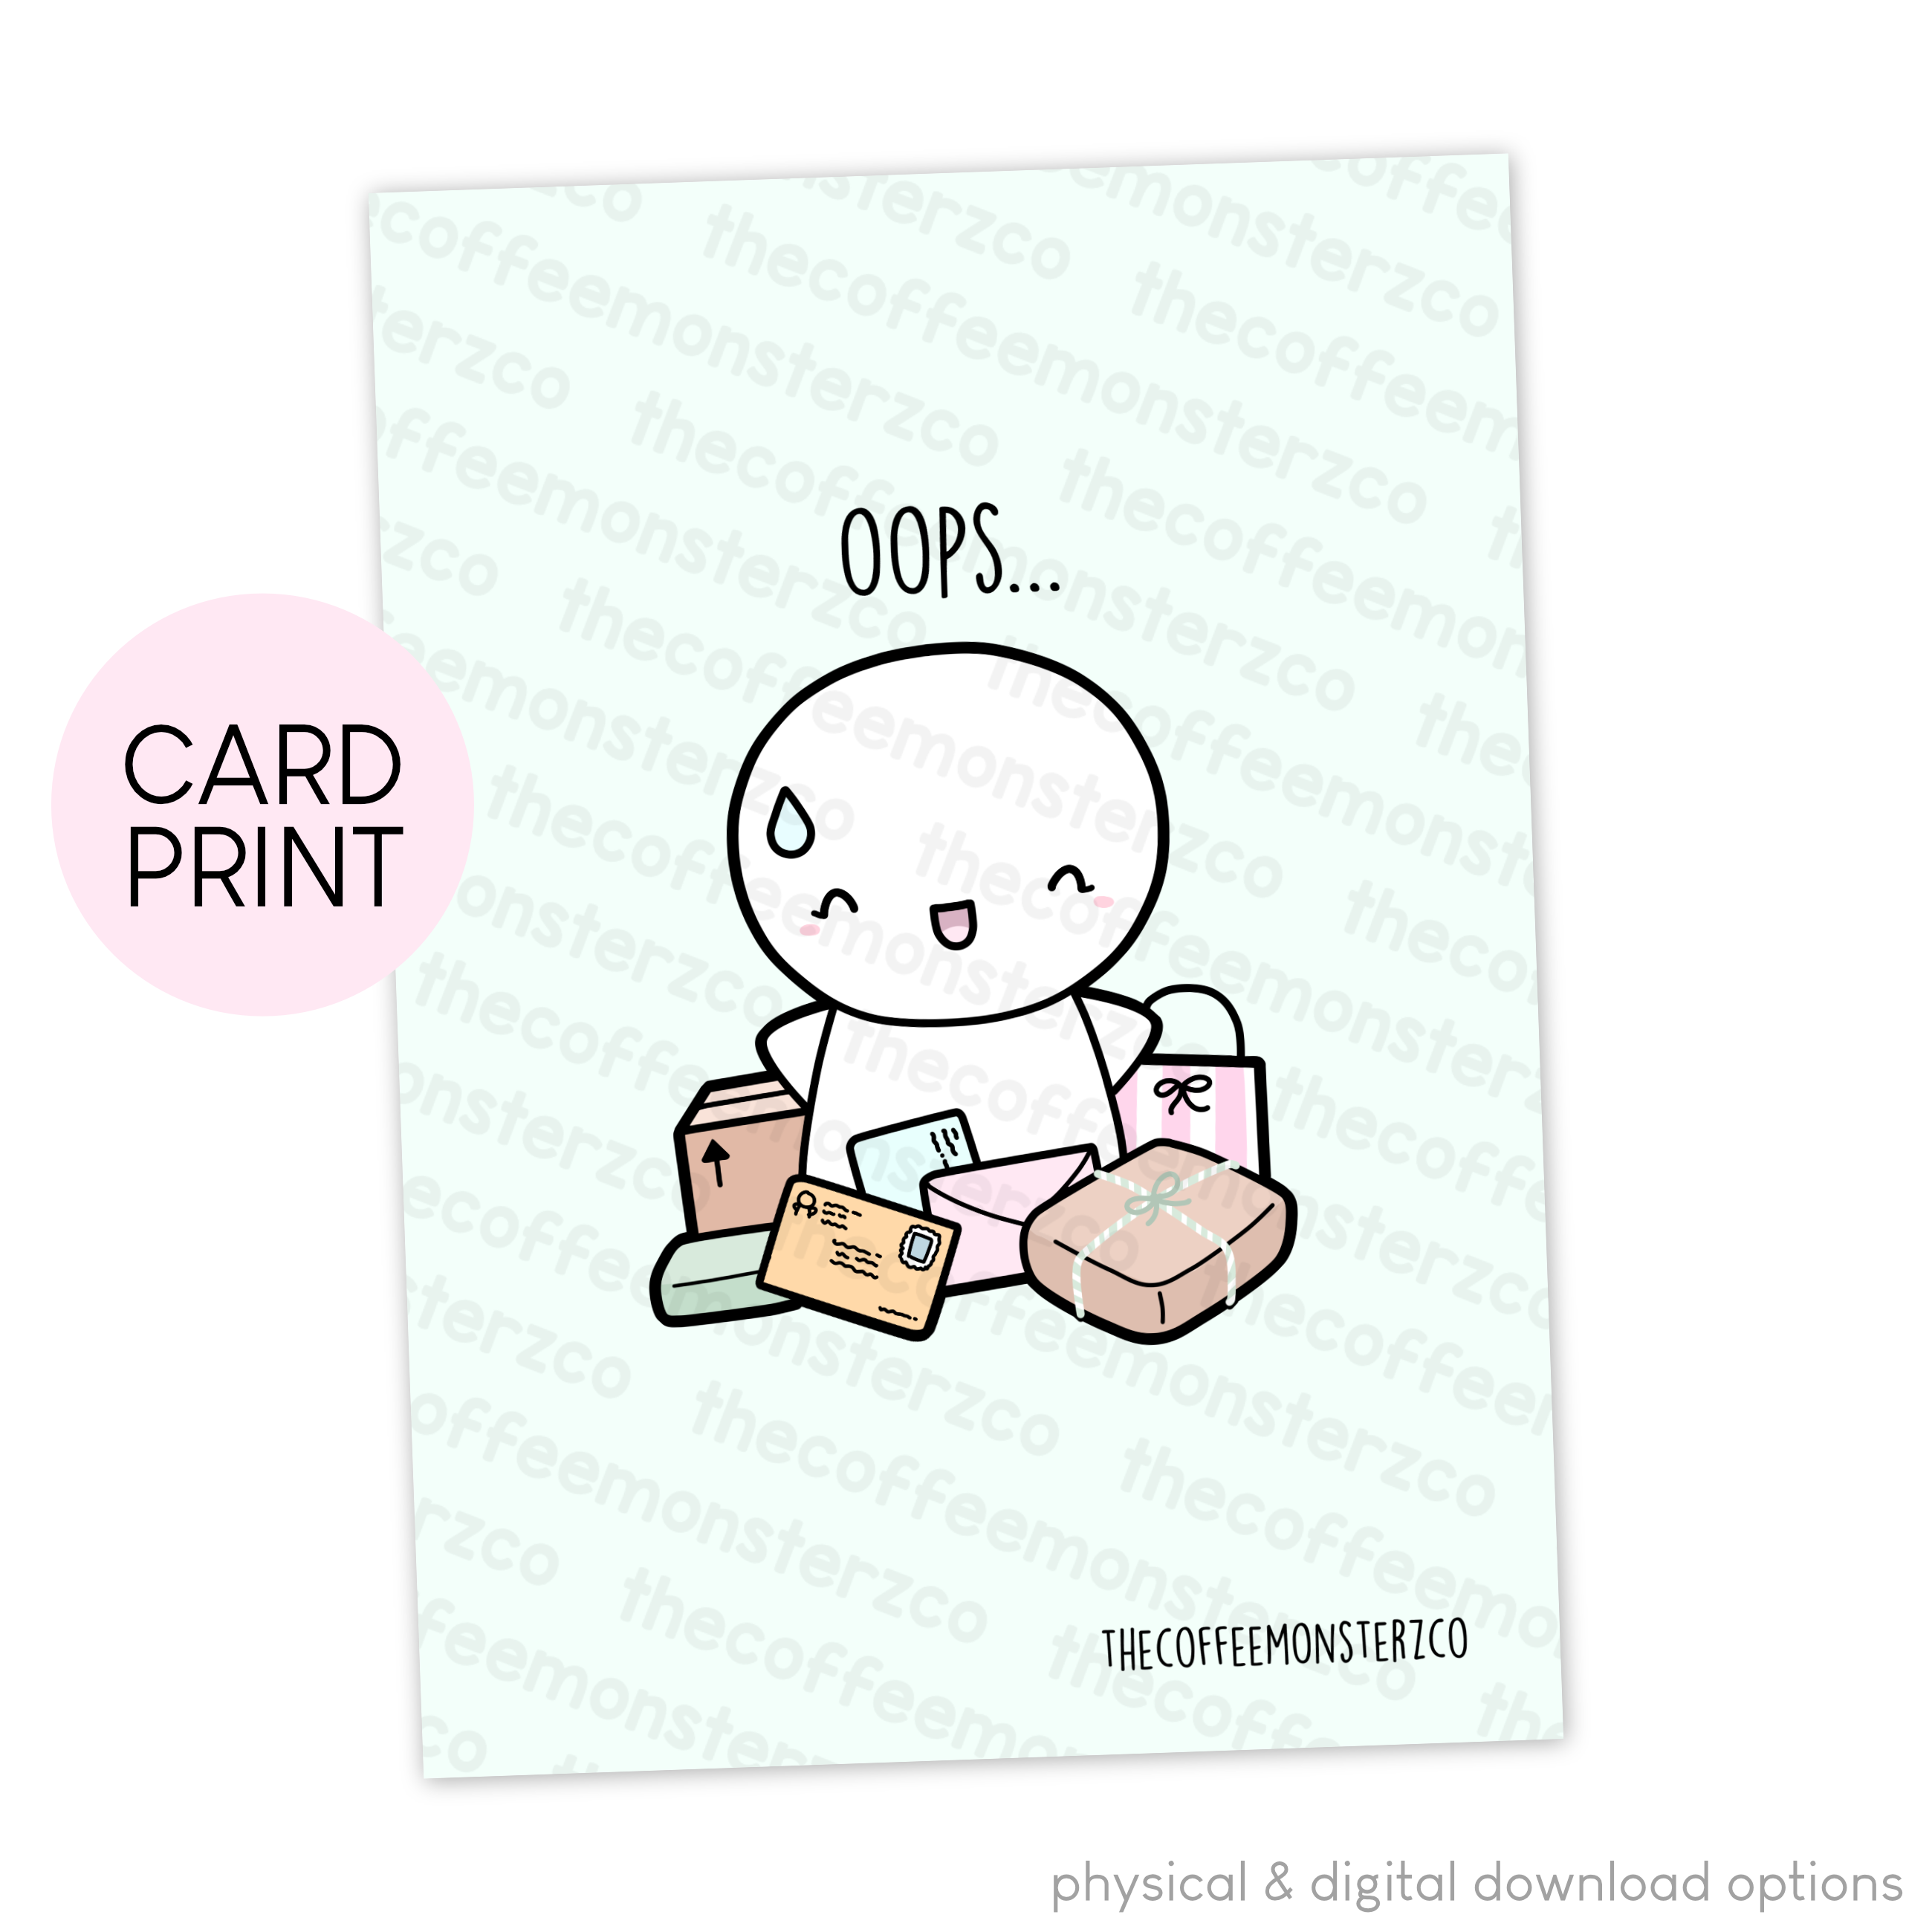 Oops... - Card Print